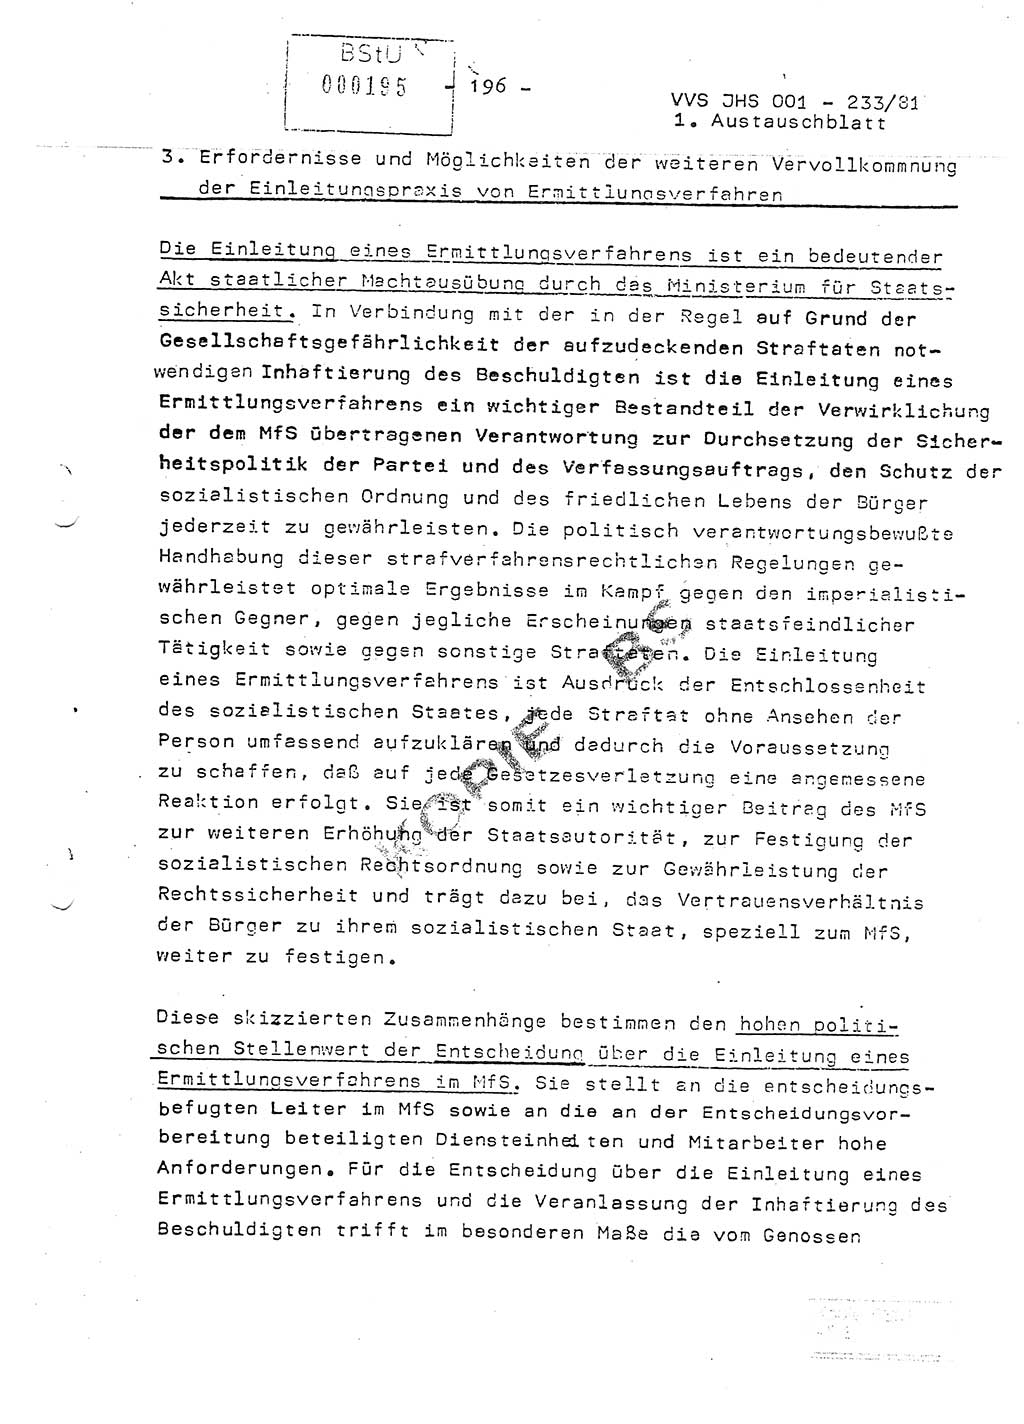 Dissertation Oberstleutnant Horst Zank (JHS), Oberstleutnant Dr. Karl-Heinz Knoblauch (JHS), Oberstleutnant Gustav-Adolf Kowalewski (HA Ⅸ), Oberstleutnant Wolfgang Plötner (HA Ⅸ), Ministerium für Staatssicherheit (MfS) [Deutsche Demokratische Republik (DDR)], Juristische Hochschule (JHS), Vertrauliche Verschlußsache (VVS) o001-233/81, Potsdam 1981, Blatt 196 (Diss. MfS DDR JHS VVS o001-233/81 1981, Bl. 196)